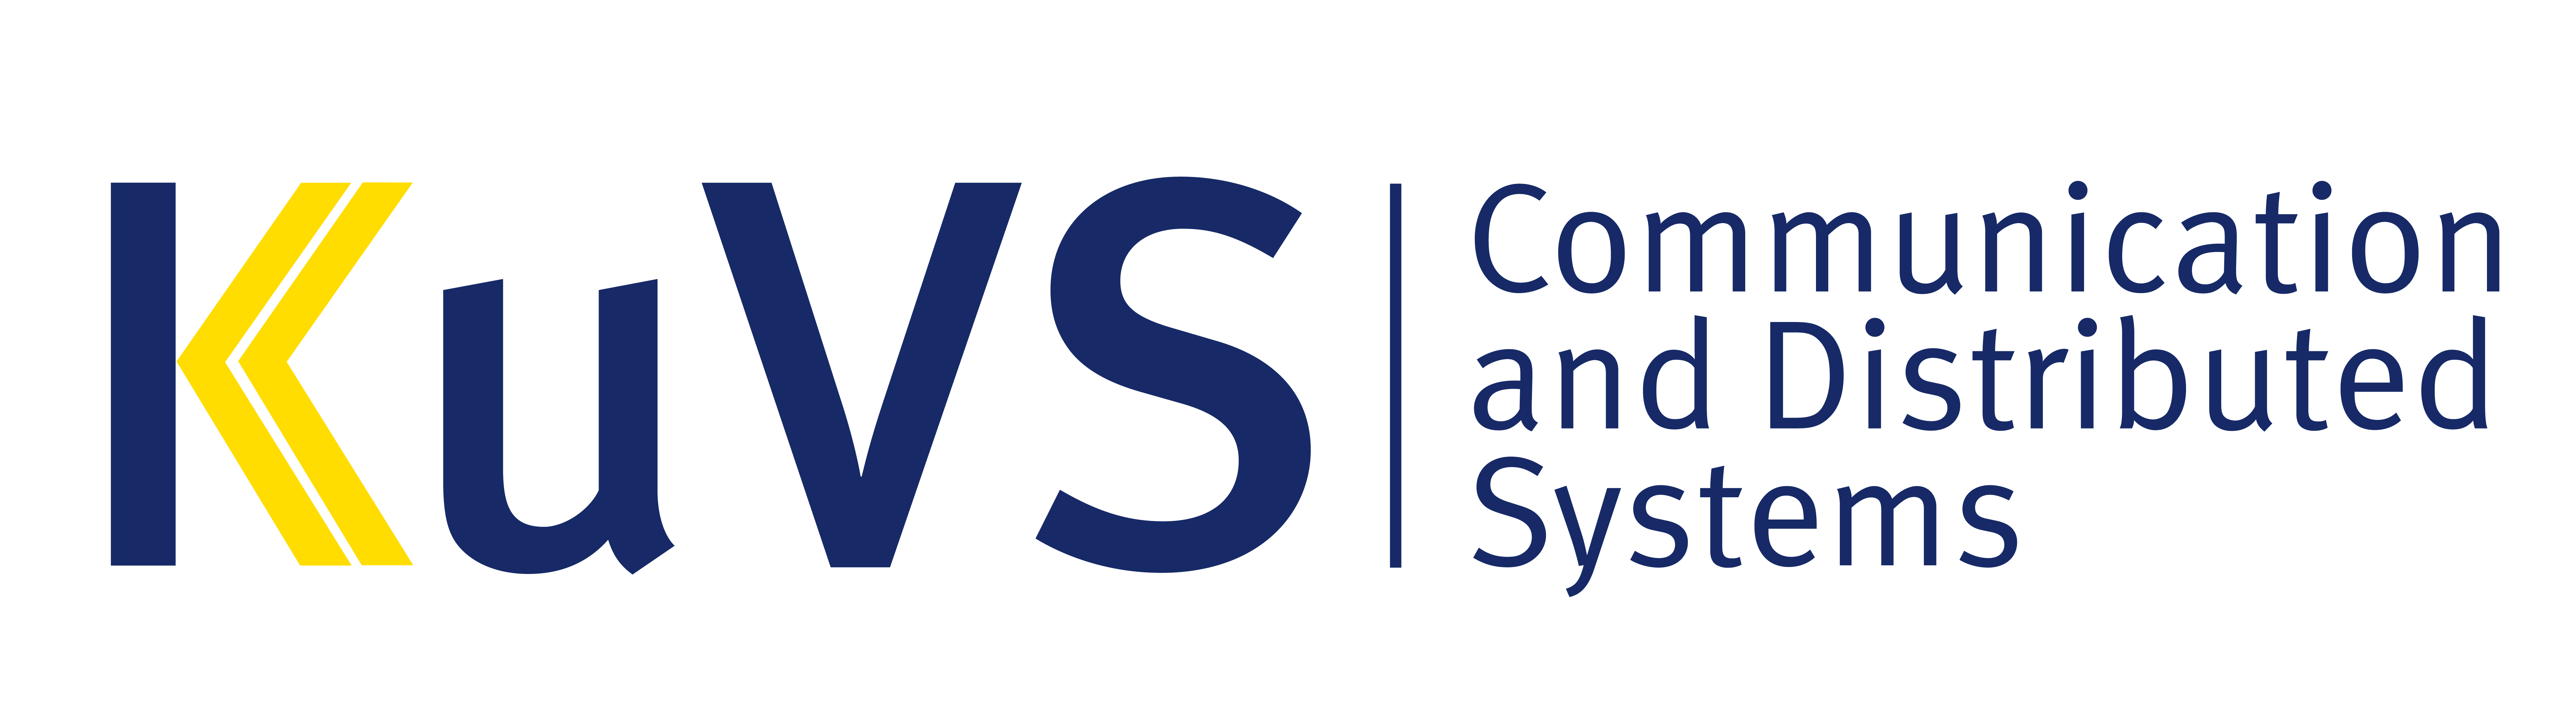 Logo der Gesellschaft für Informatik e.V.